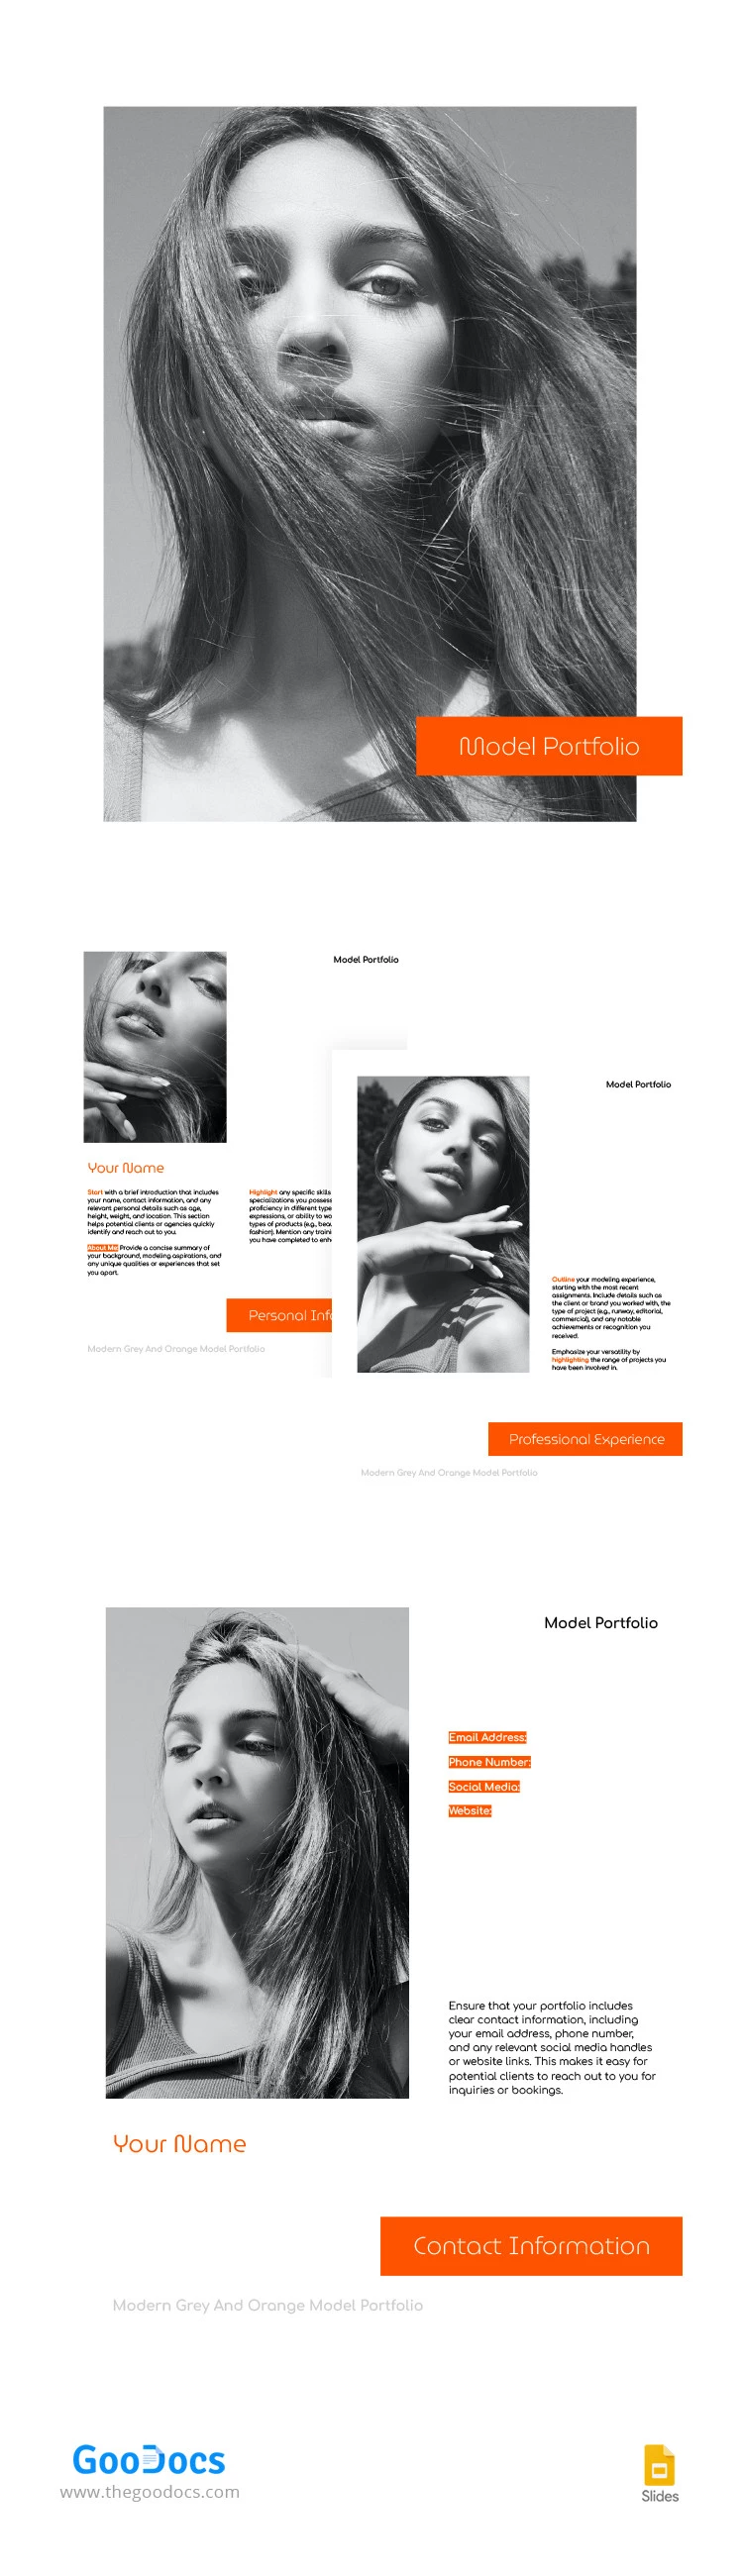 Portfolio di modelli grigio e arancione moderno - free Google Docs Template - 10066458